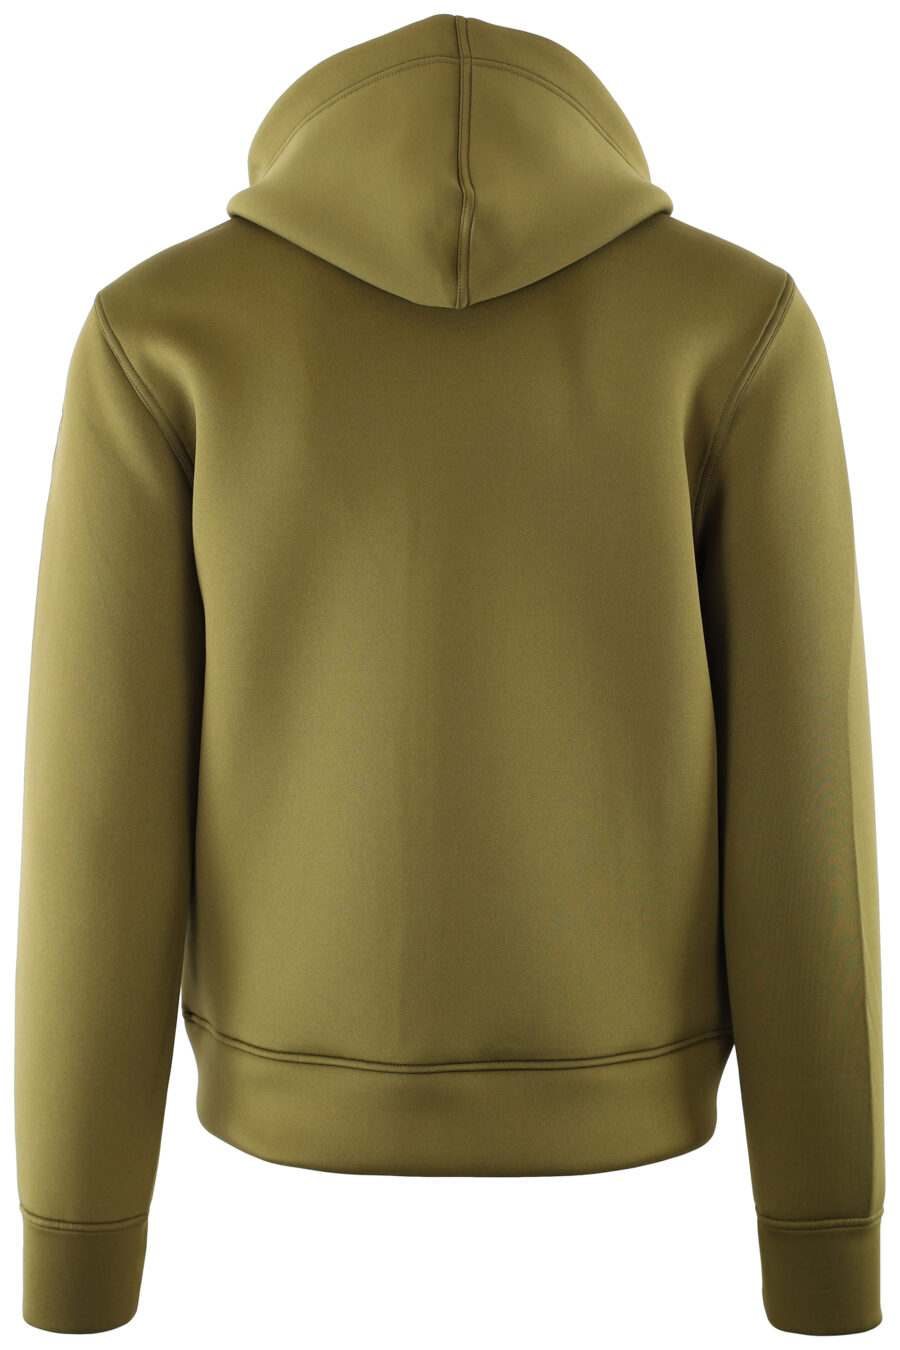 Green sweatshirt with hood and zip - IMG 7357